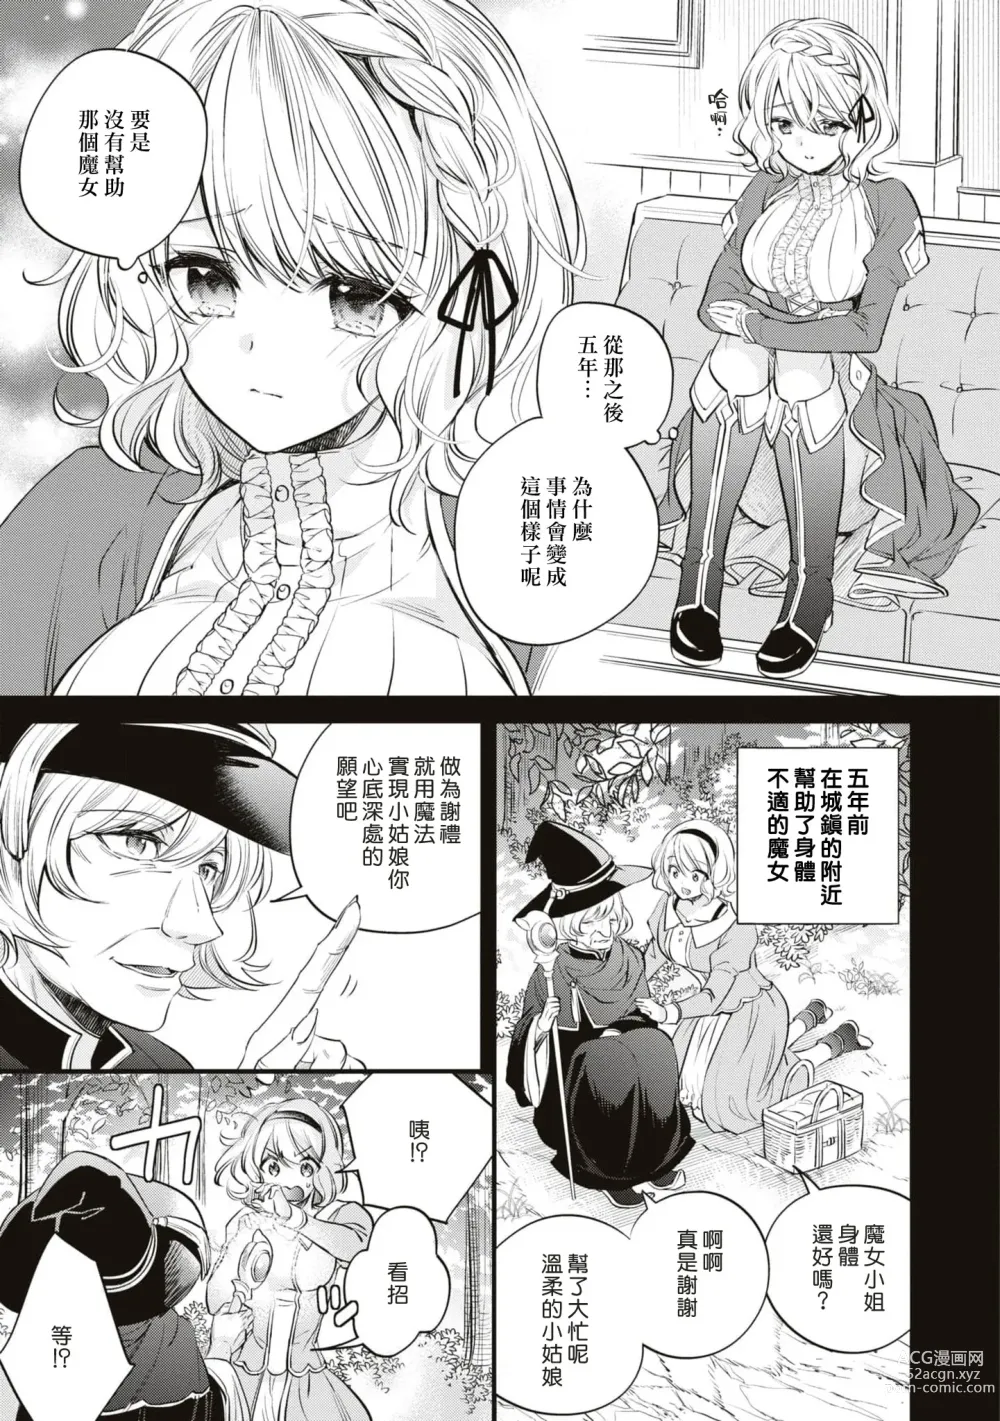 Page 3 of manga 不经意间帮助过的魔女向我报恩，所以被下了会自动朝喜欢的人走去，并会在碰触他时被施予淫纹的魔法。